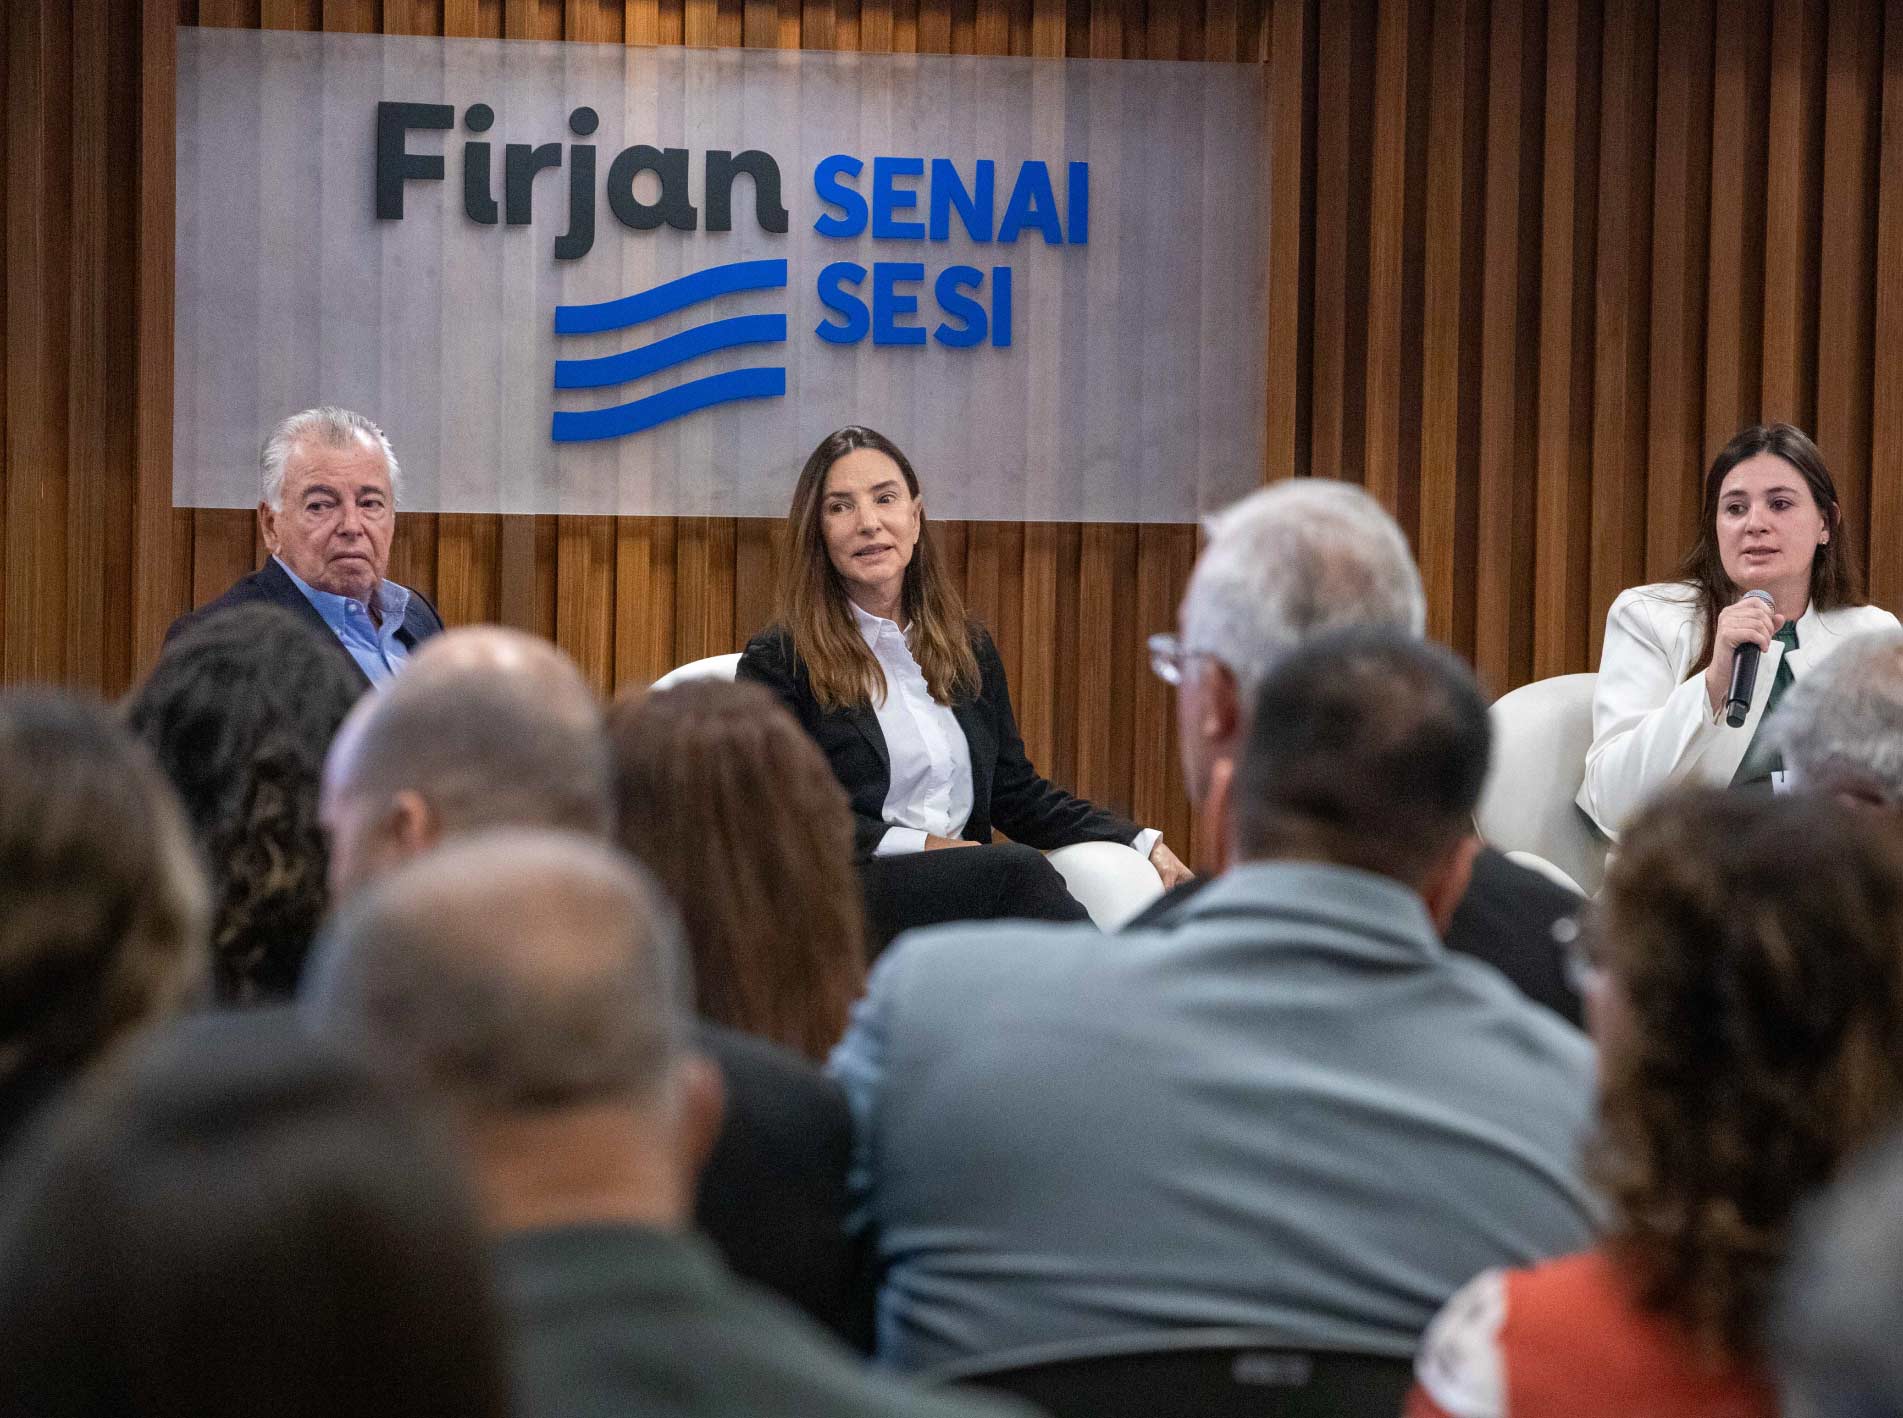  Executivos da Firjan, da ONIP e da Petrobras discutem o mercado de petróleo e gás